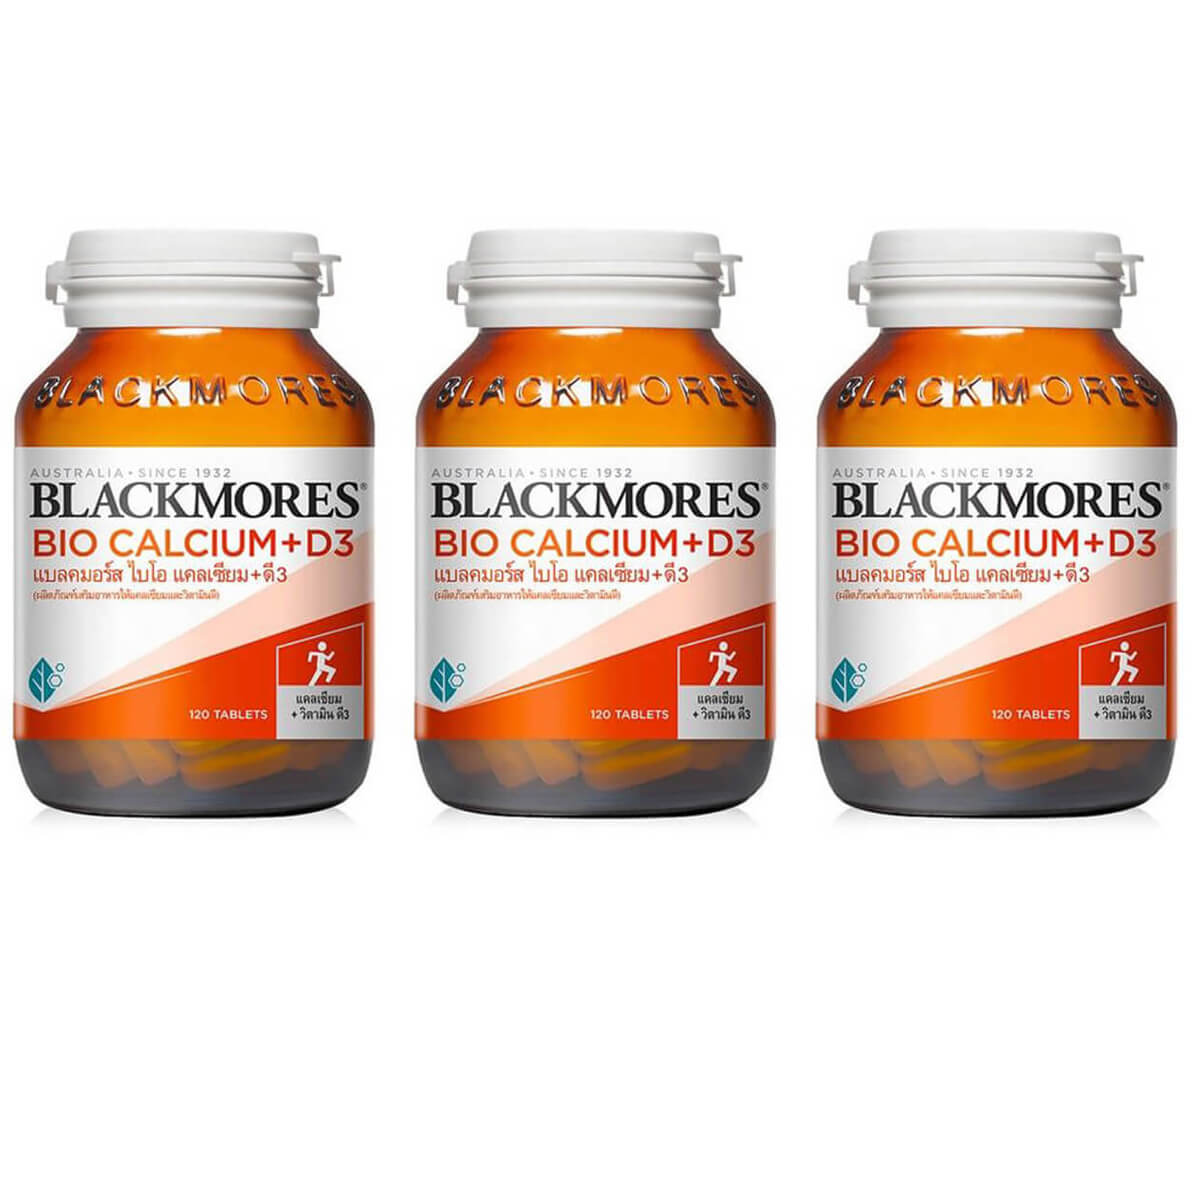 Пищевая добавка Blackmores Bio Calcium + D3, 3 банки по 120 таблеток